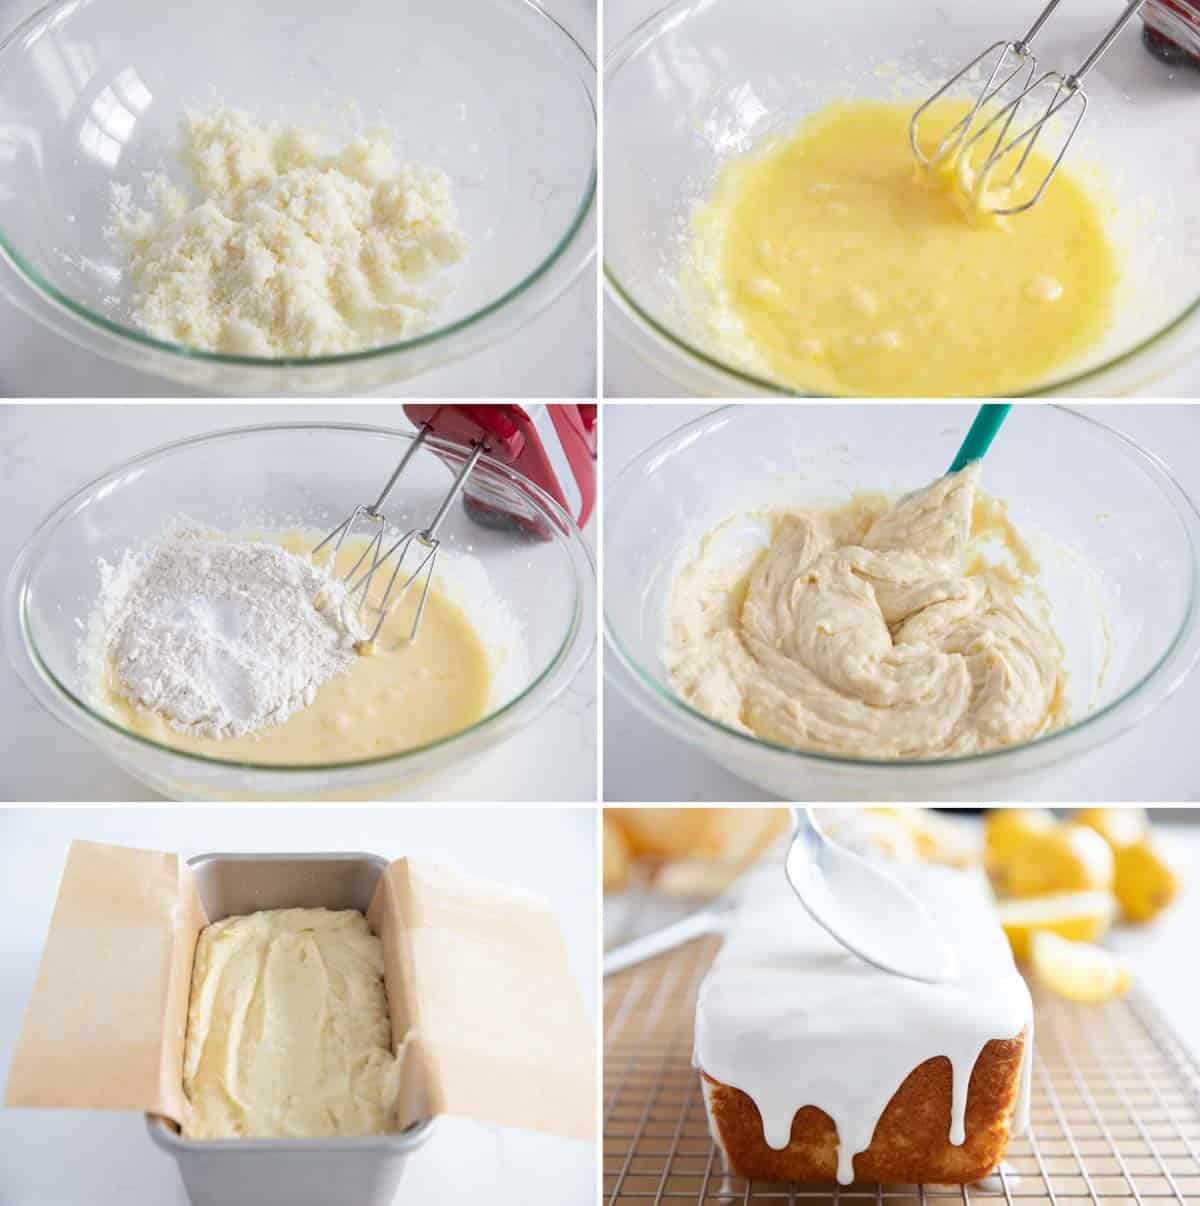 Steps to make Iced Lemon Loaf.